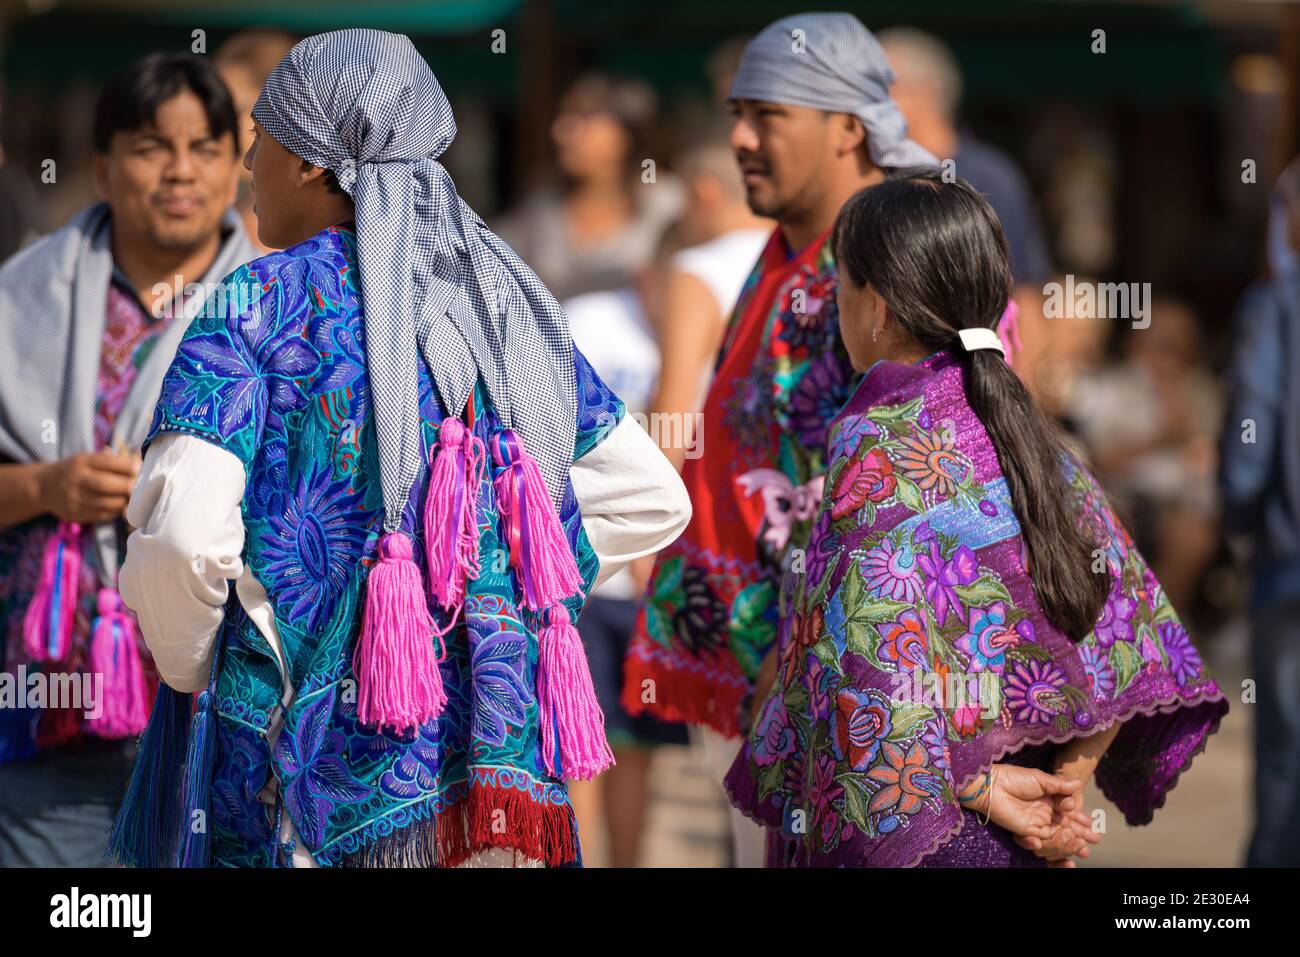 Groupe de Mexicains avec robe traditionnelle à la texture florale et adresse à carreaux avec des glands fuchsia, village de Zinacantan, Chiapas, Mexique. Banque D'Images